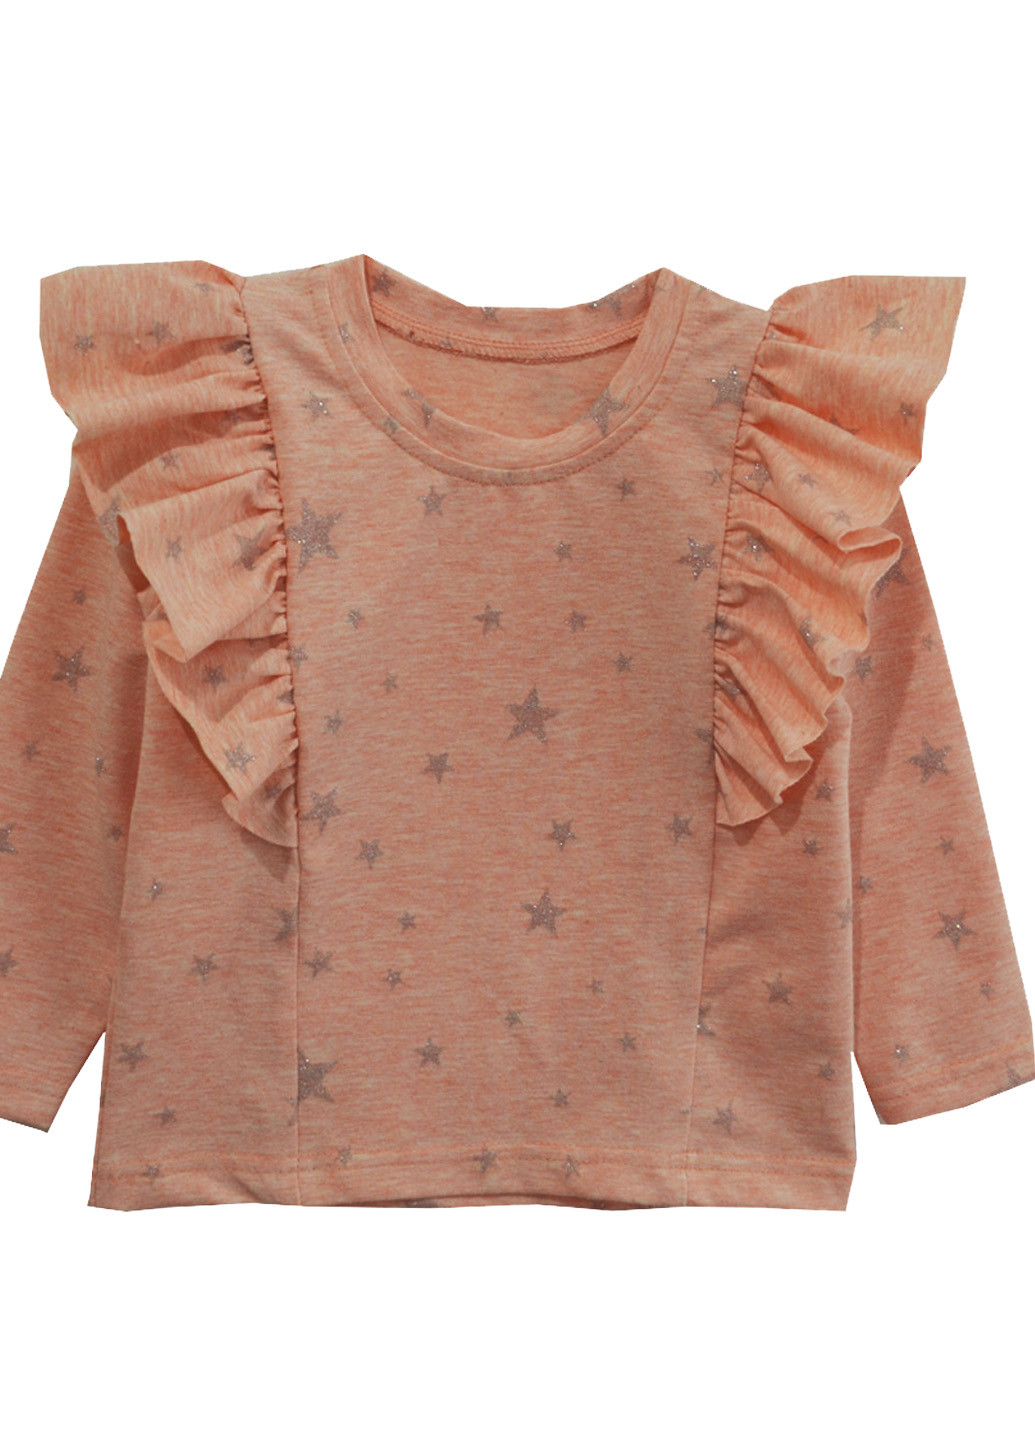 Персиковая с звездным узором блузка Витуся демисезонная